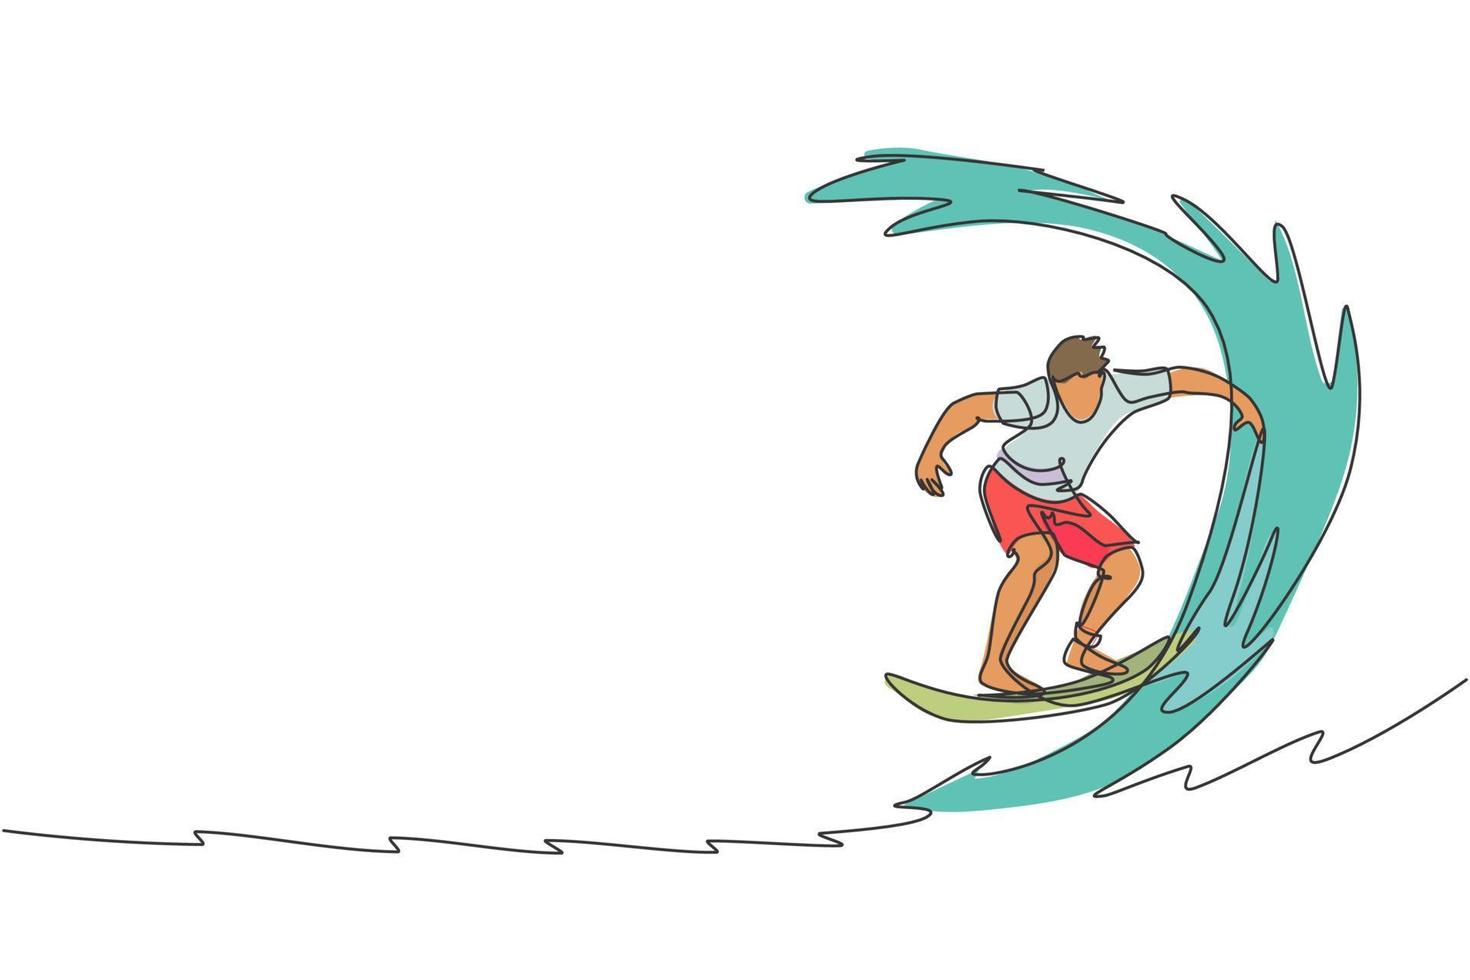 enkele doorlopende lijntekening jonge professionele surfer in actie die de golven berijdt op de blauwe oceaan. extreem watersportconcept. zomervakantie. trendy één lijn tekenen ontwerp grafische vectorillustratie vector